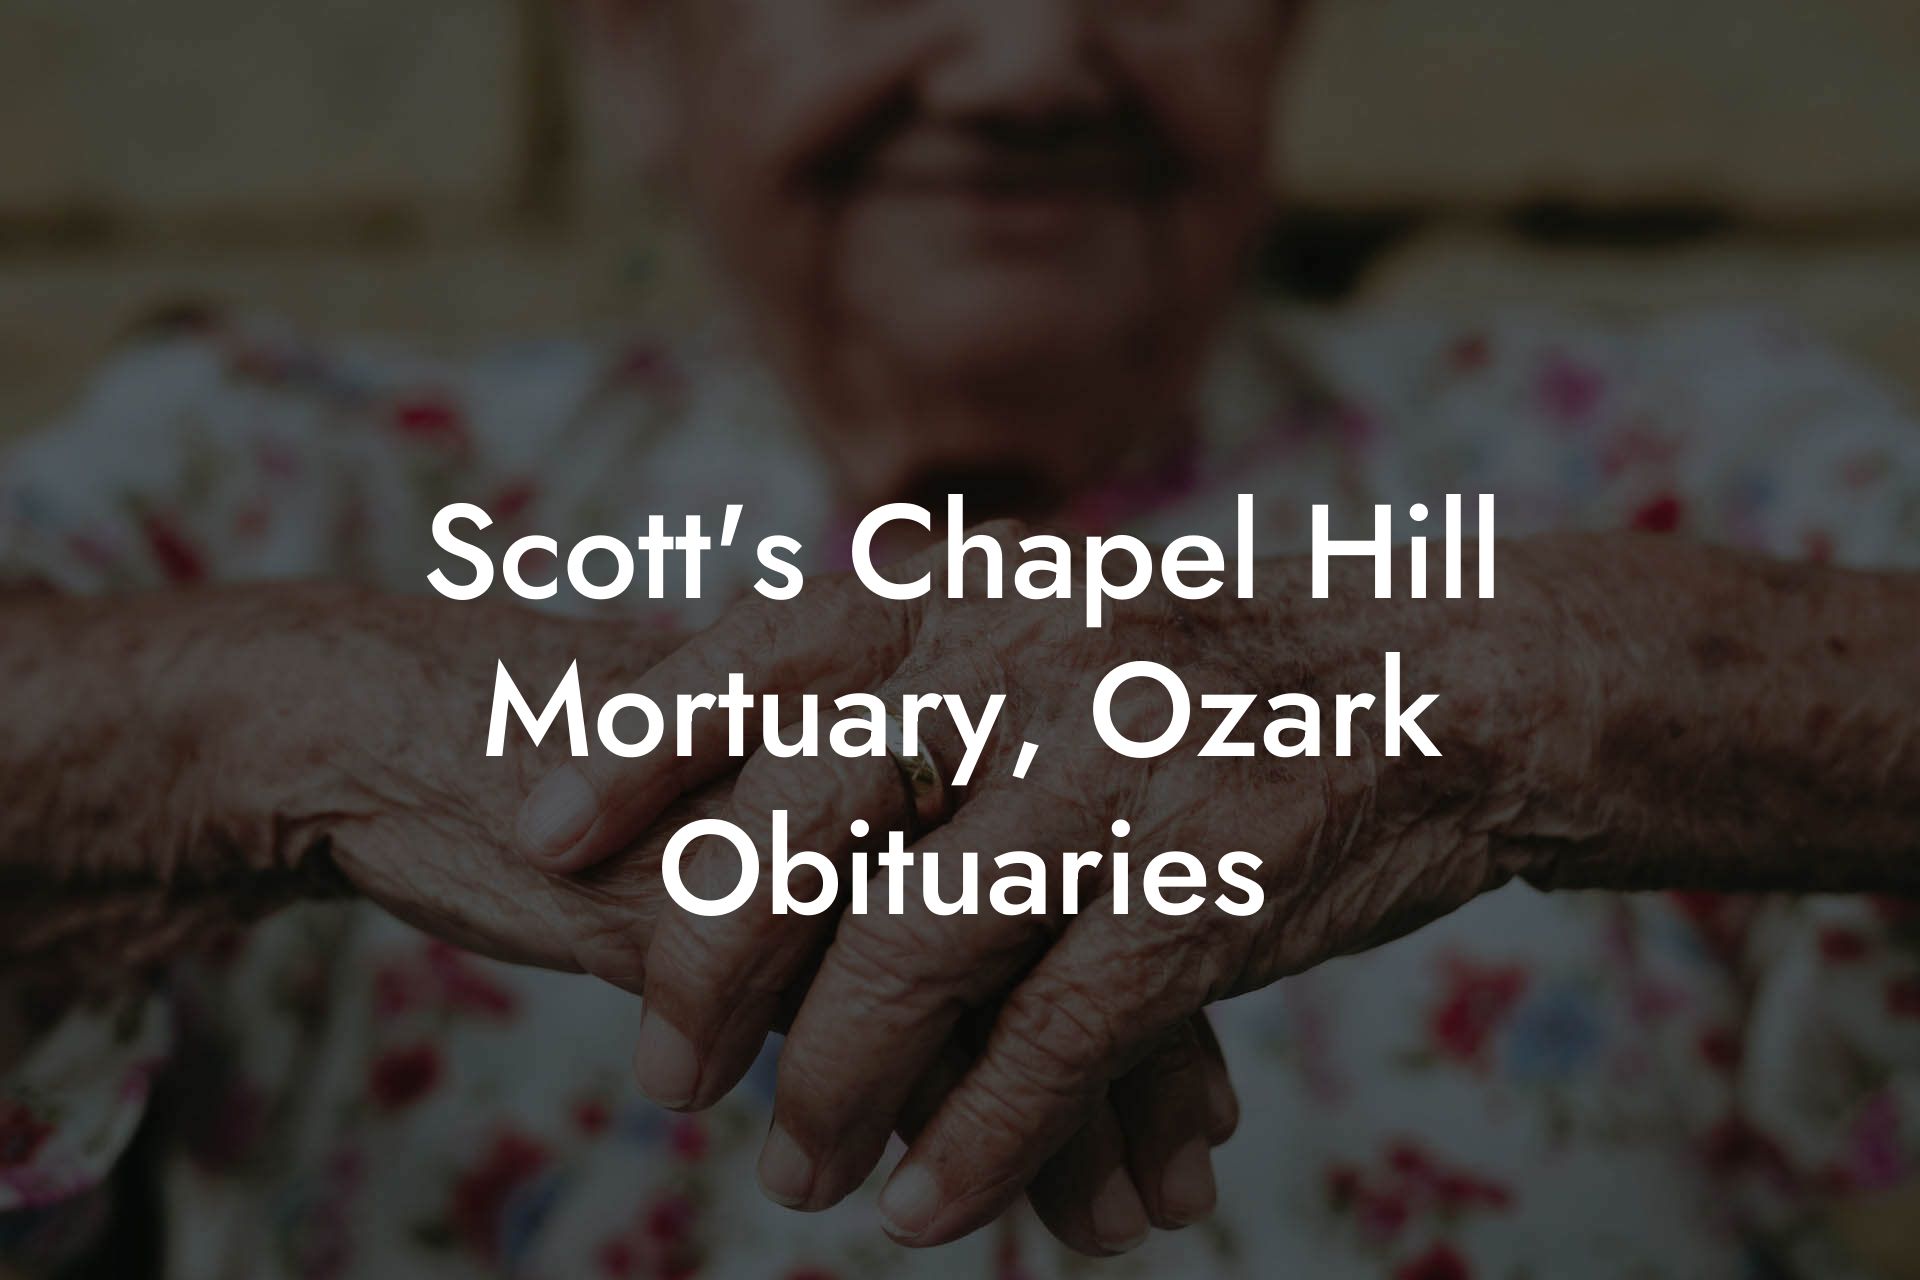 Scott's Chapel Hill Mortuary, Ozark Obituaries